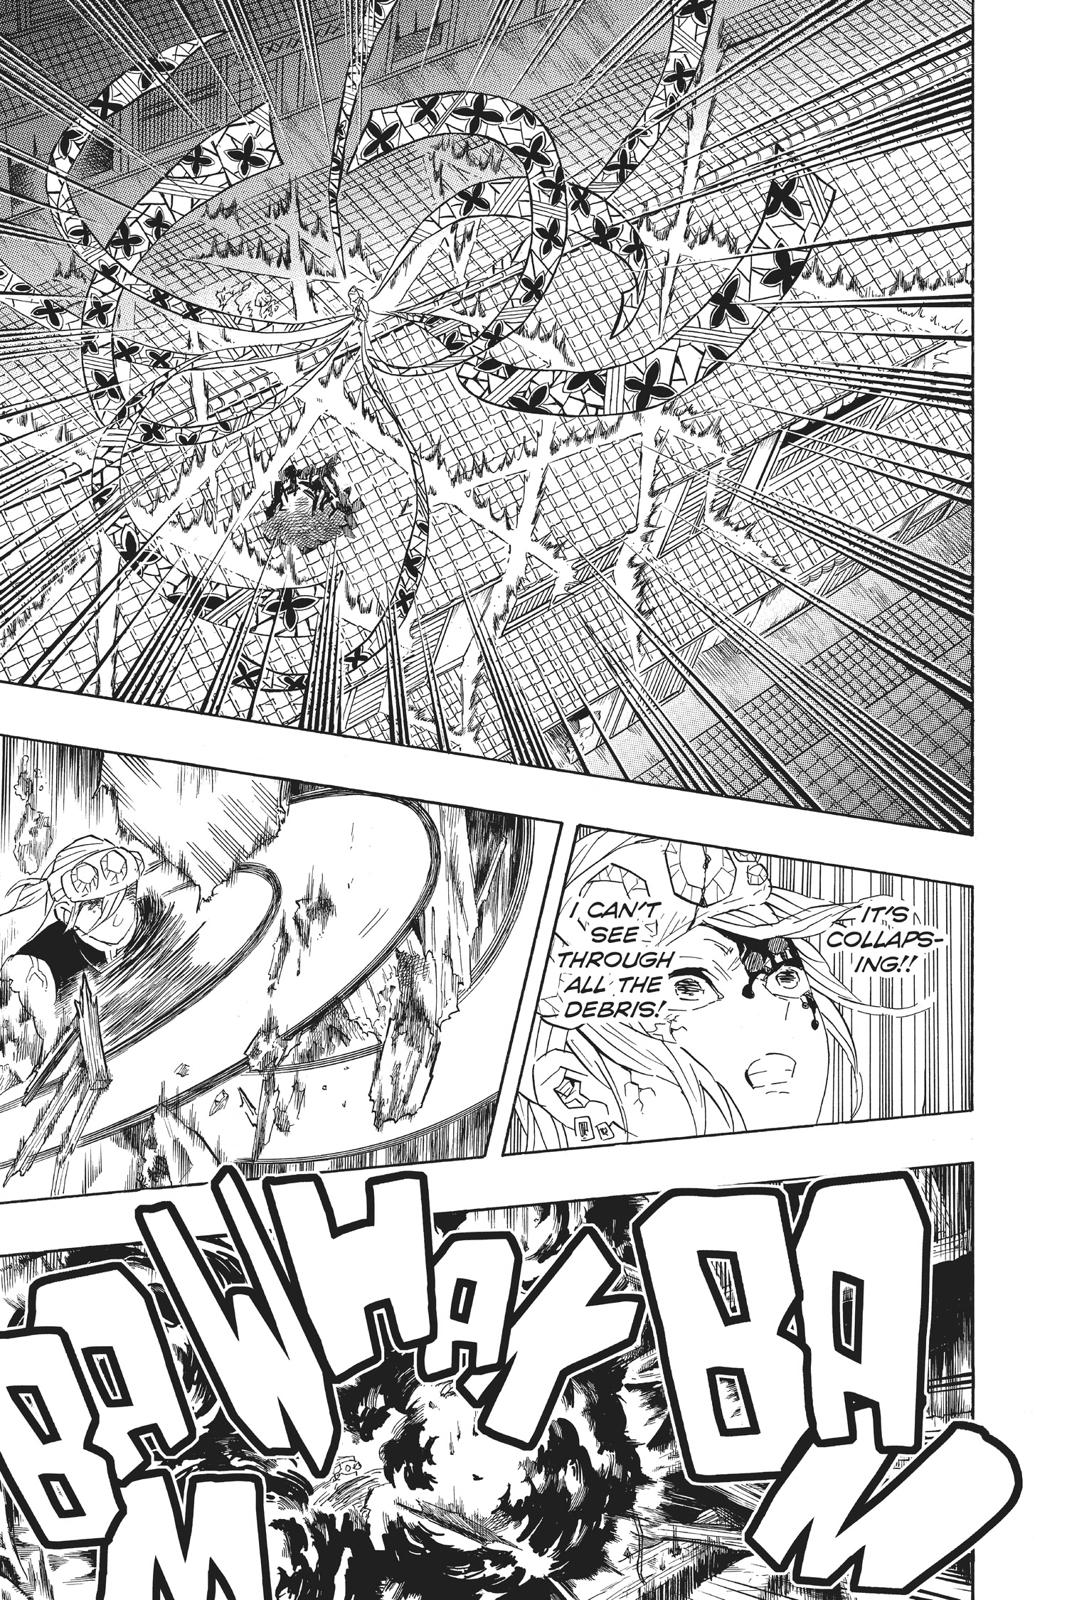 Demon Slayer Manga Manga Chapter - 89 - image 8